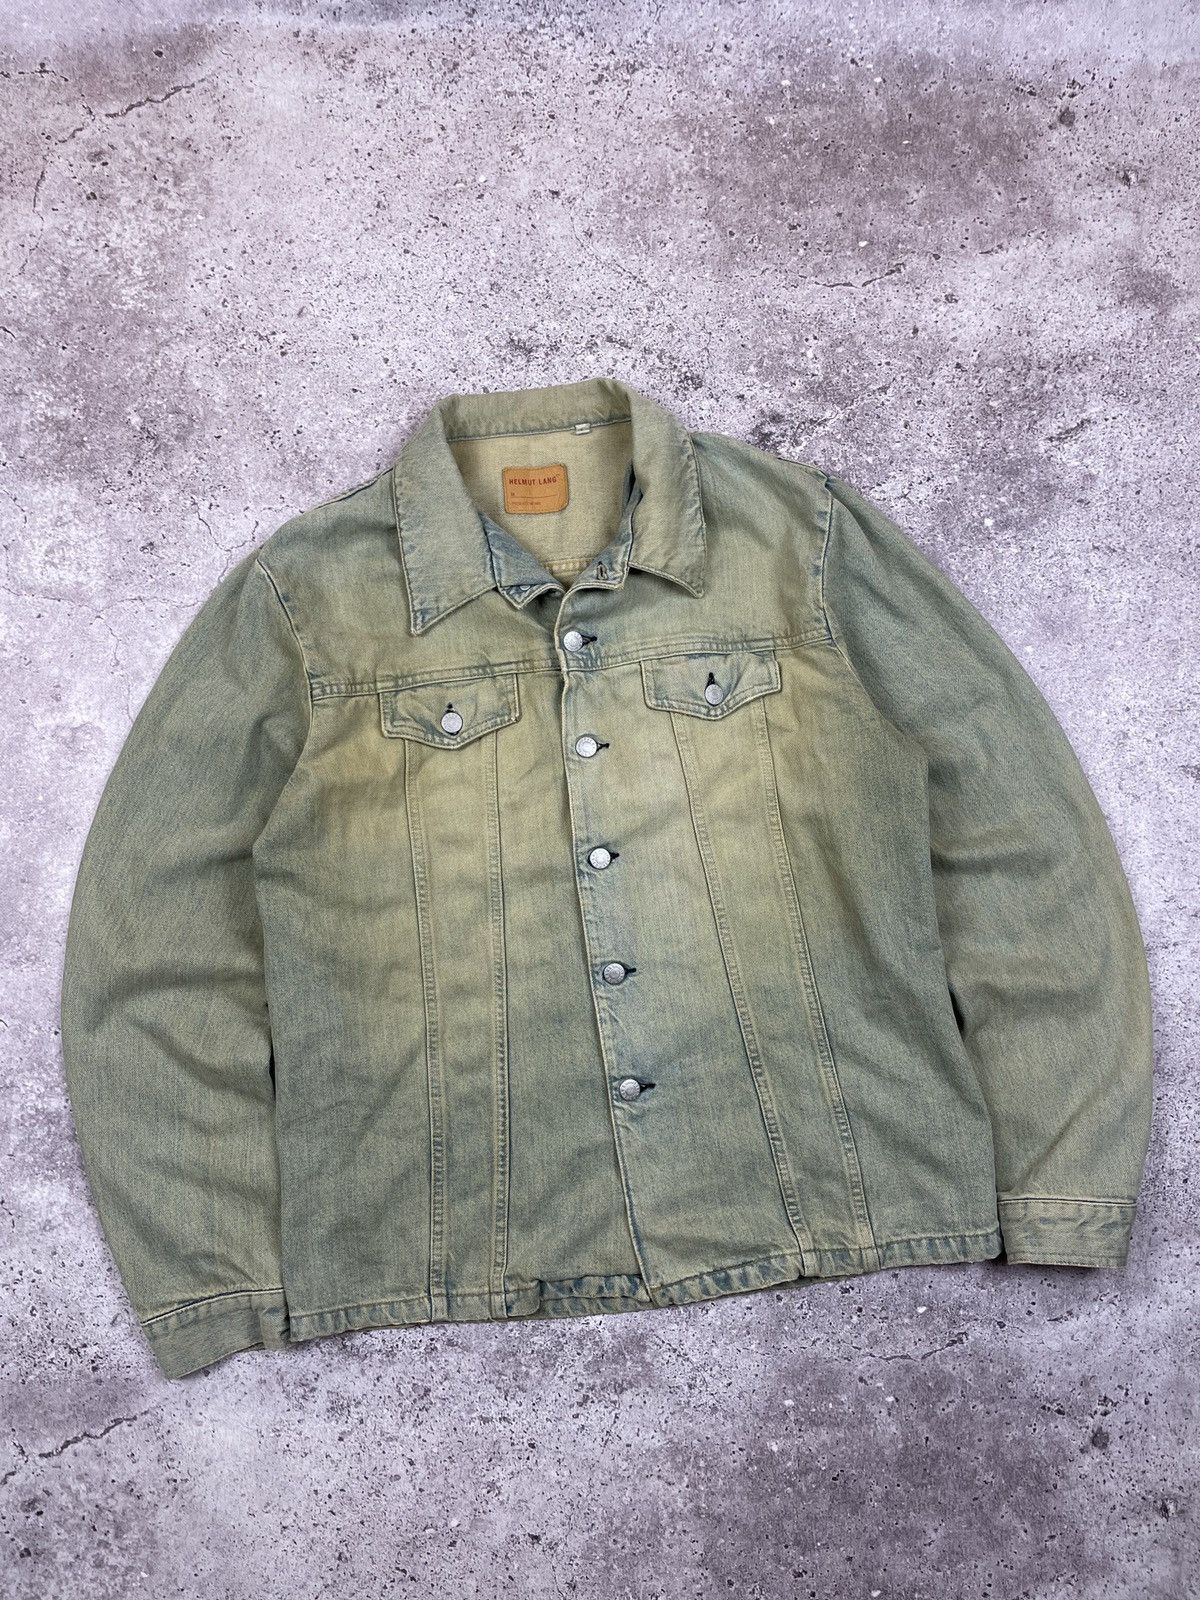 Vintage Helmut Lang vintage jeans archives jacket rare | Grailed